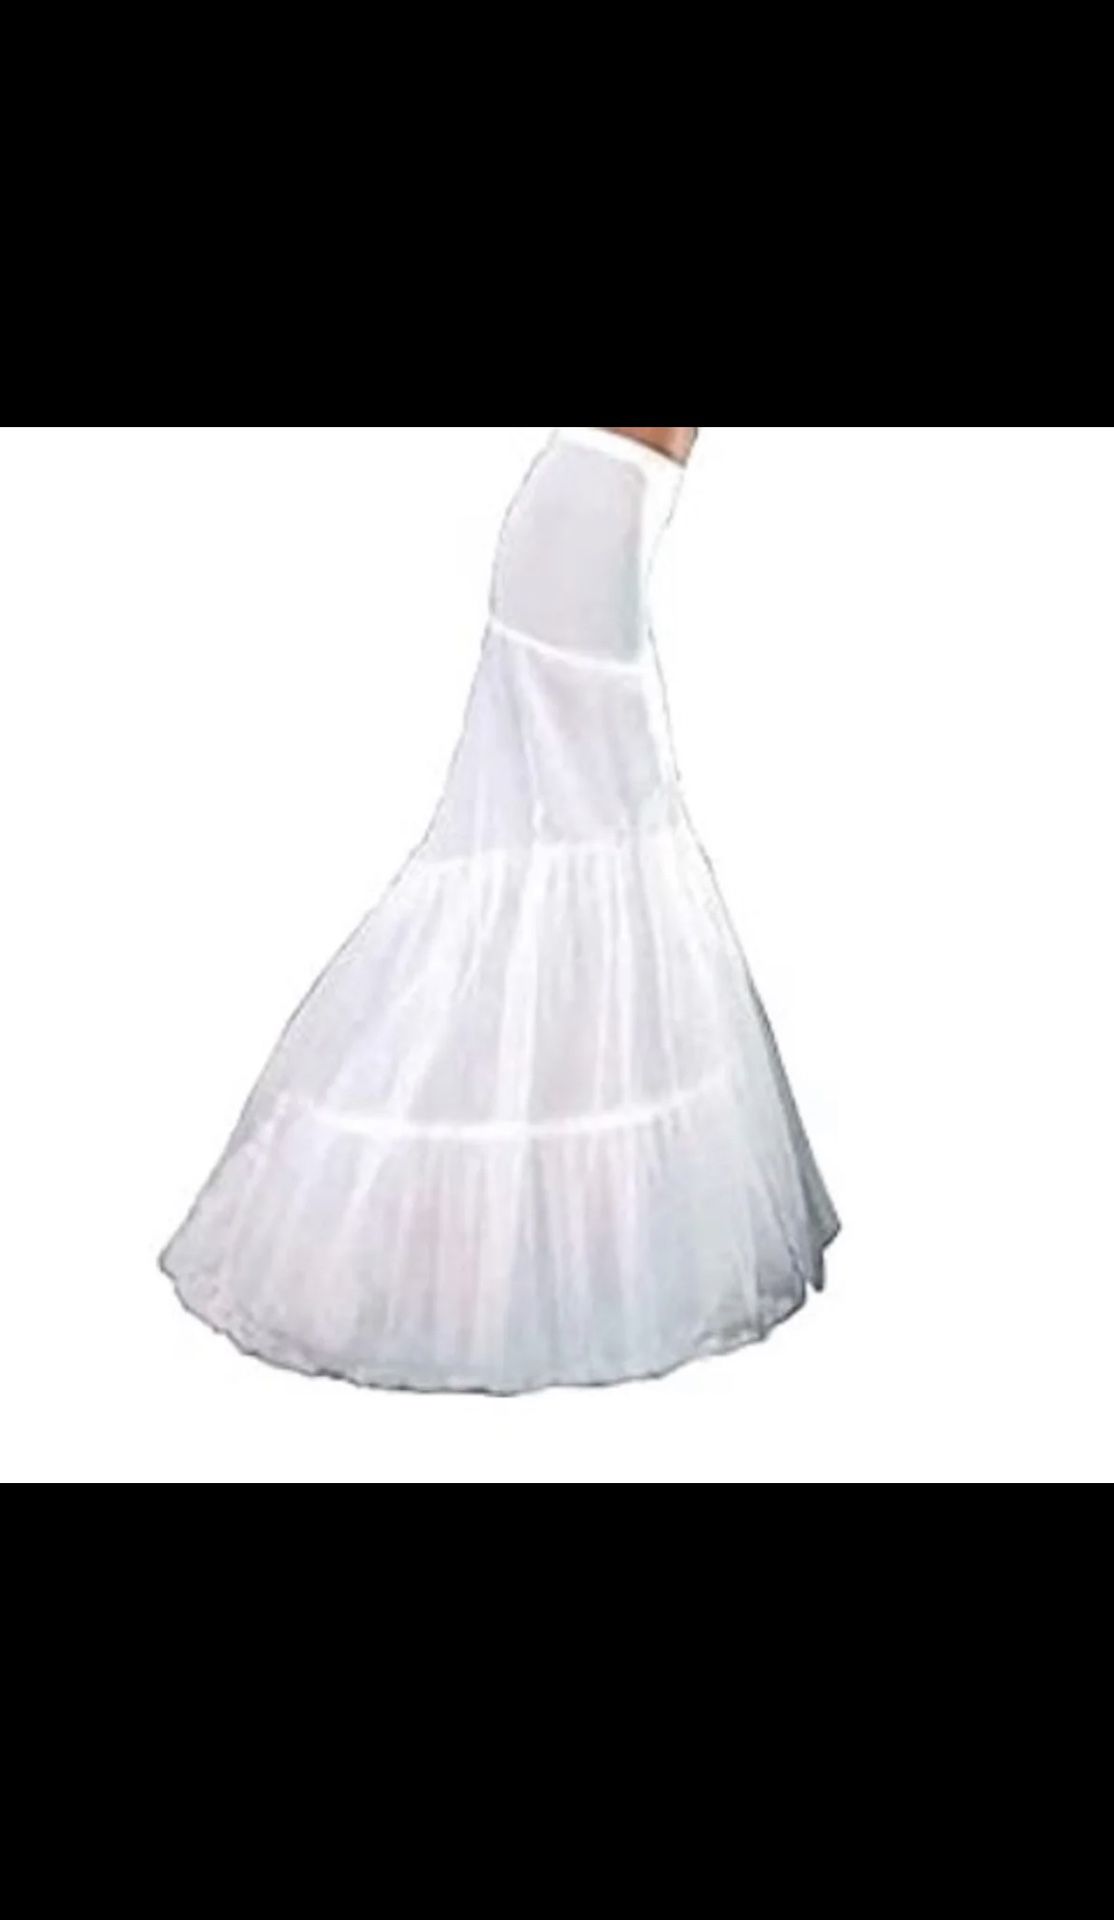 Petticoat crinoline